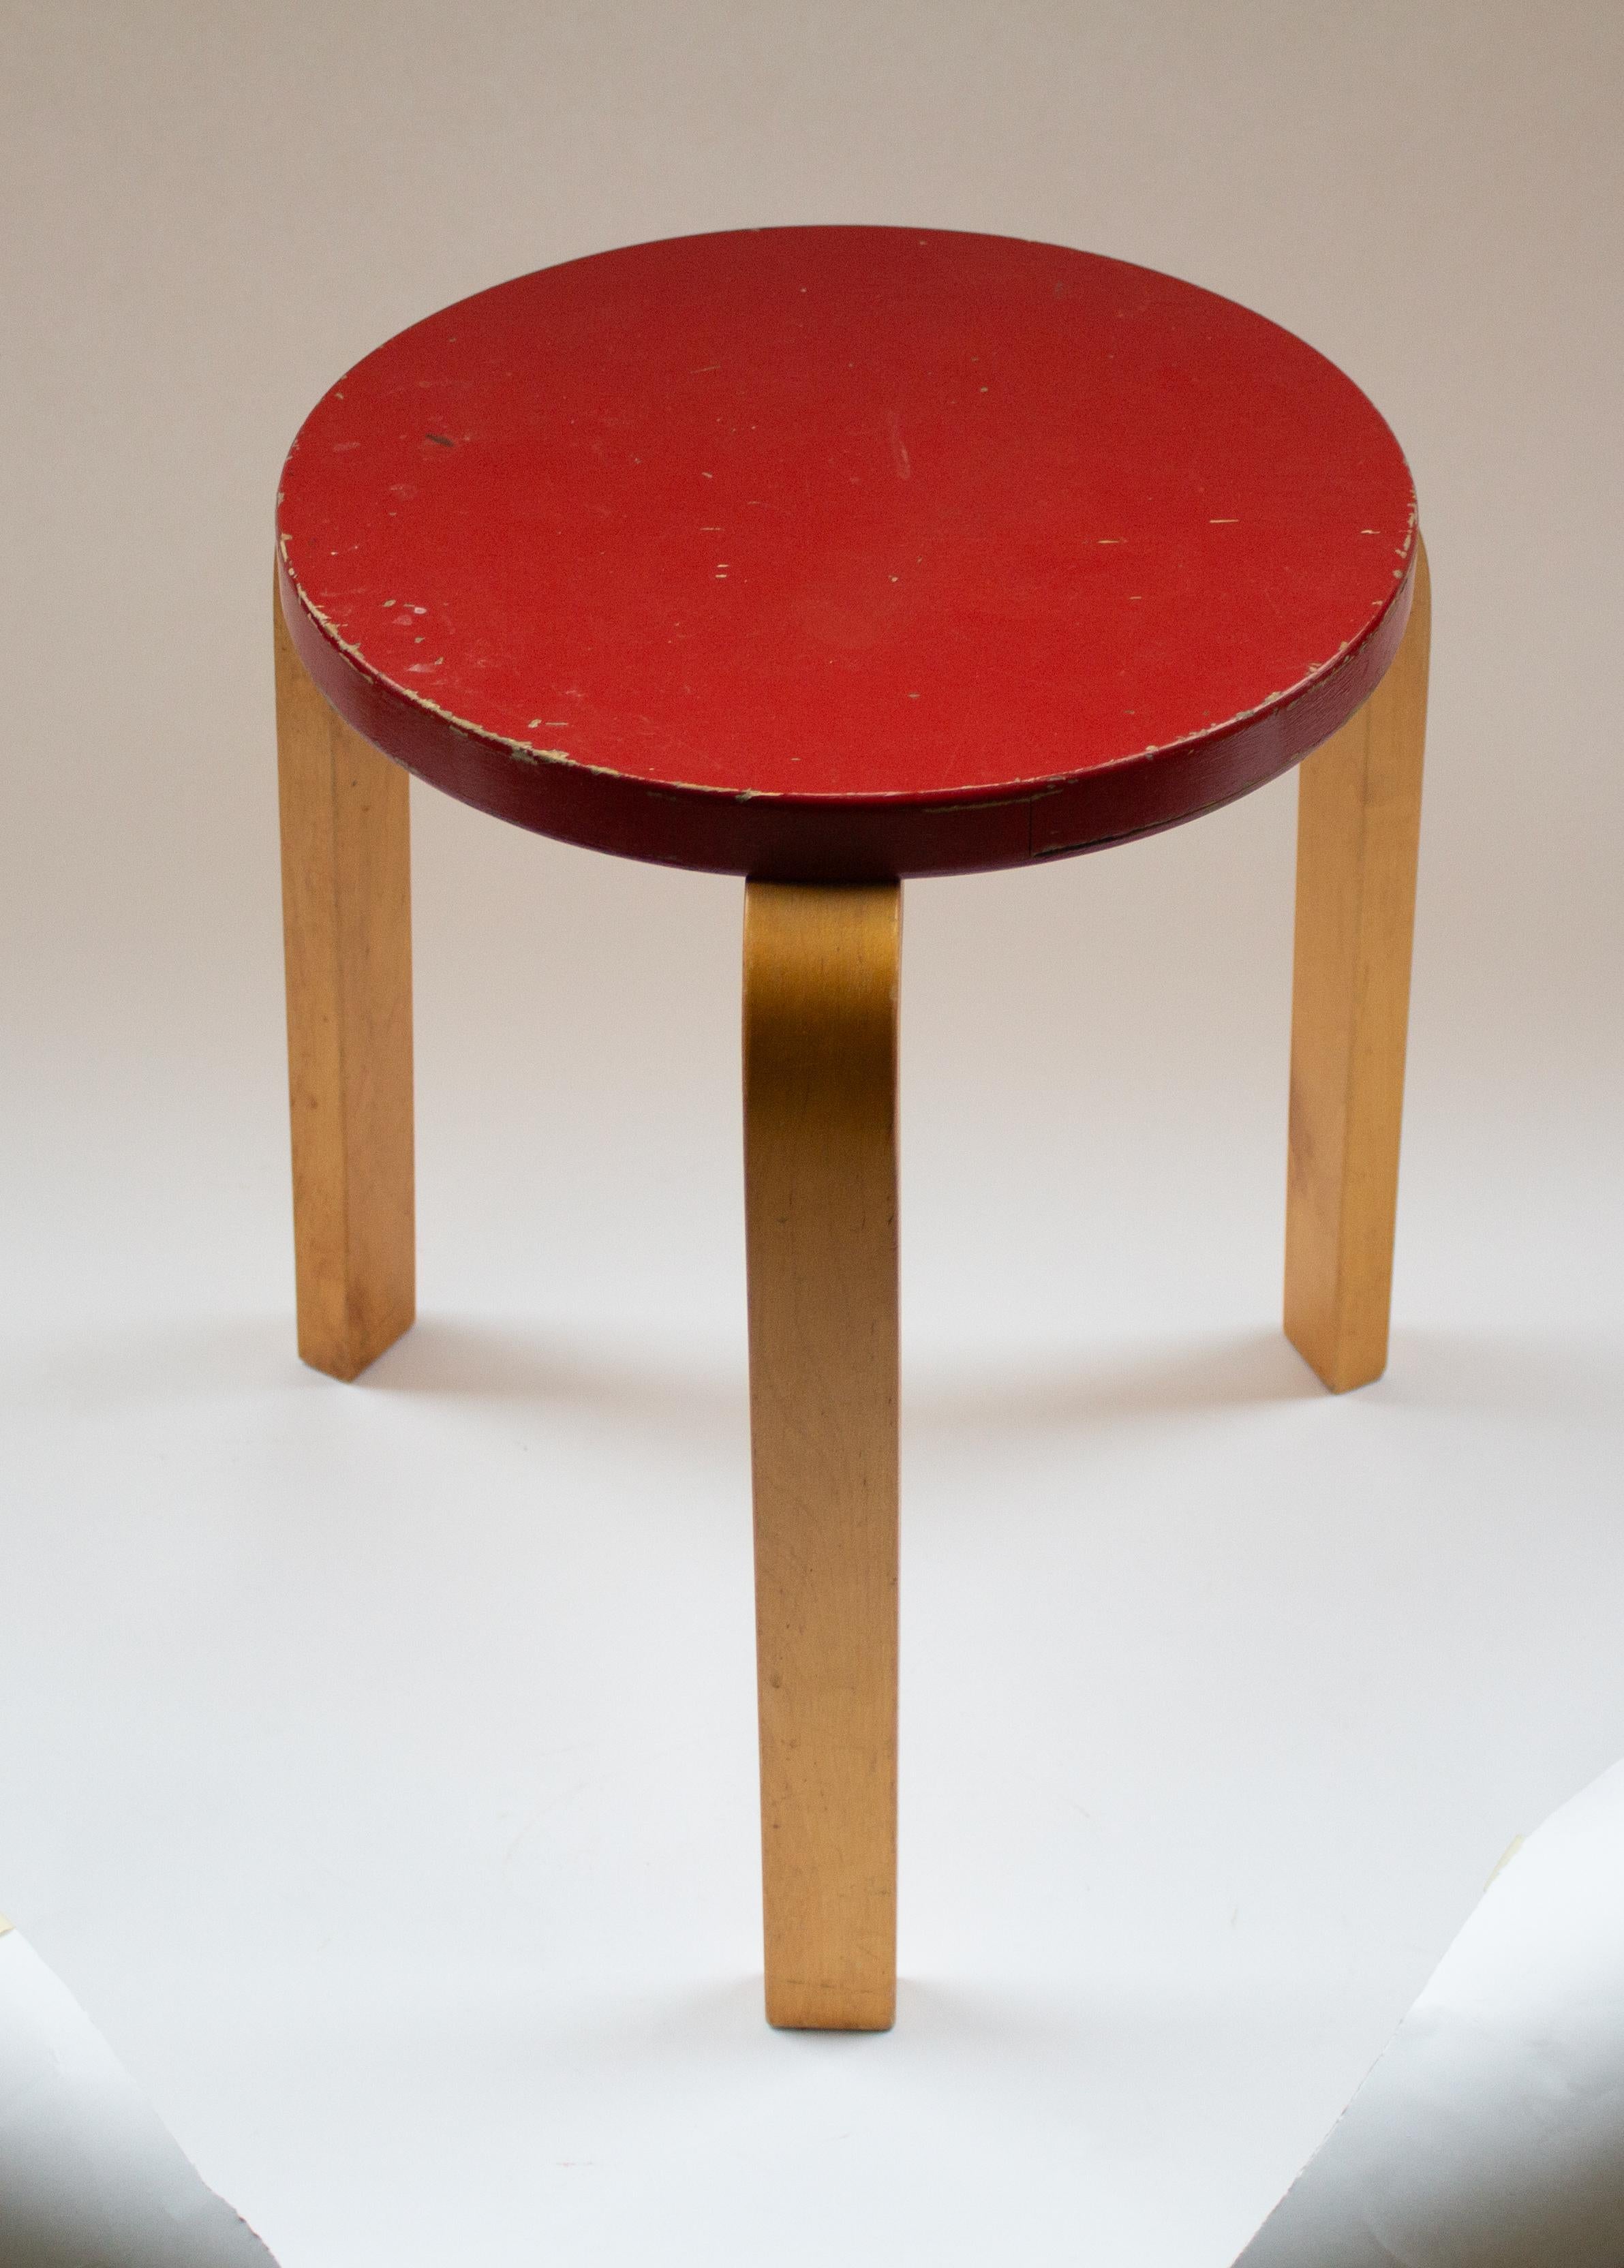 Alvar Aaltos ikonischer Hocker 60 von Artek aus den 1950er Jahren ist der Inbegriff eines minimalistischen Möbels, das als Sitzgelegenheit, Tisch, Ablage oder sogar als Ausstellungsfläche dienen kann. Diese zeitlose Kreation ist ein Zeugnis